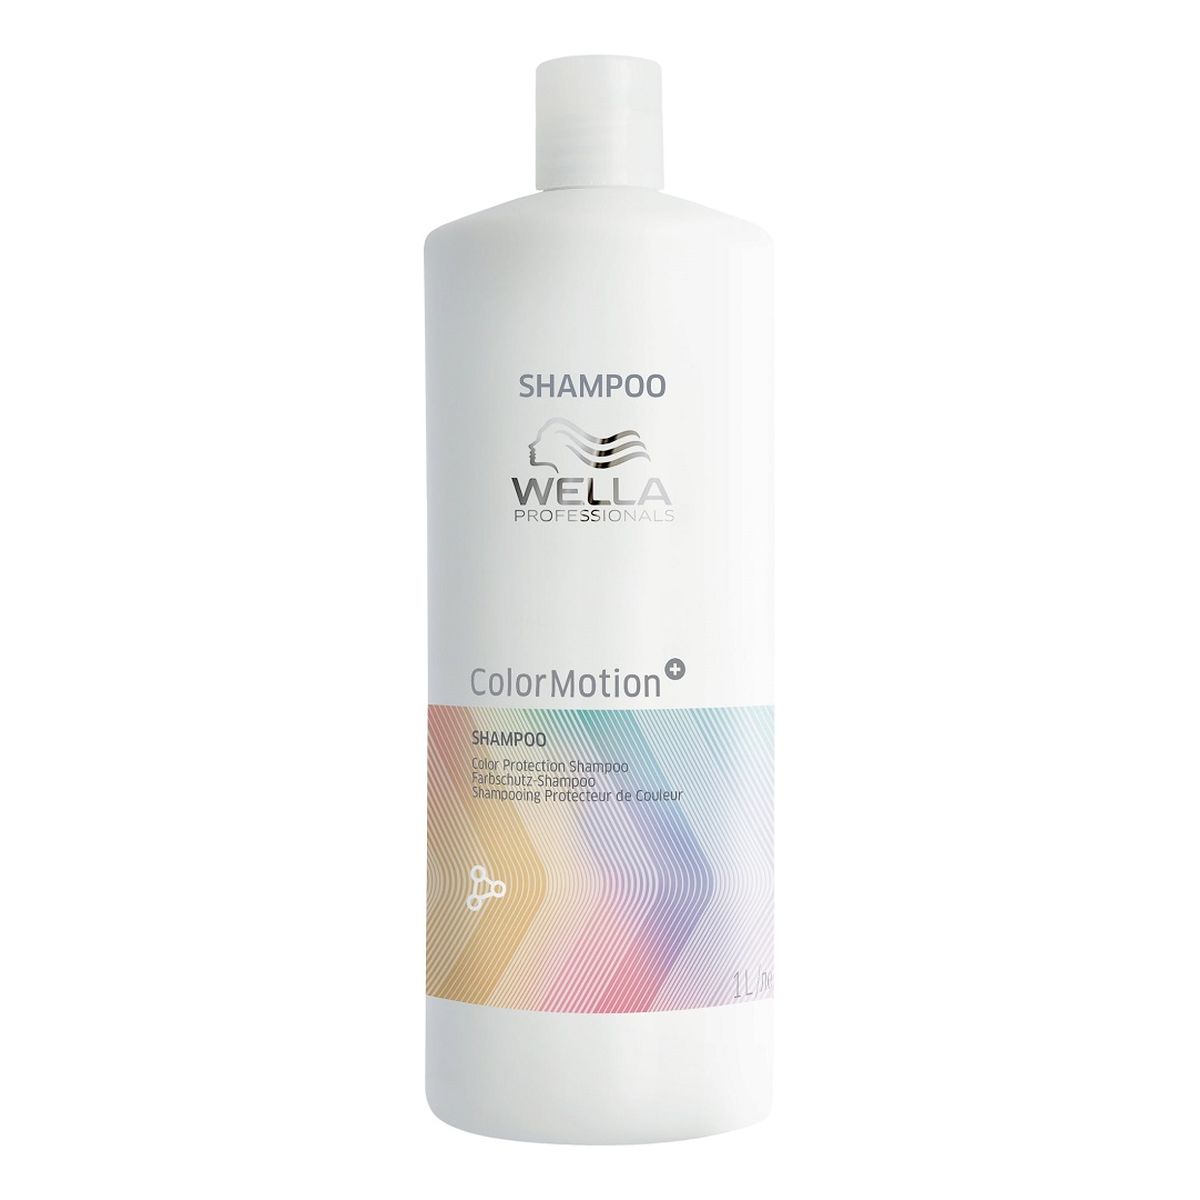 Wella Professionals Colormotion+ shampoo szampon chroniący kolor włosów 1000ml